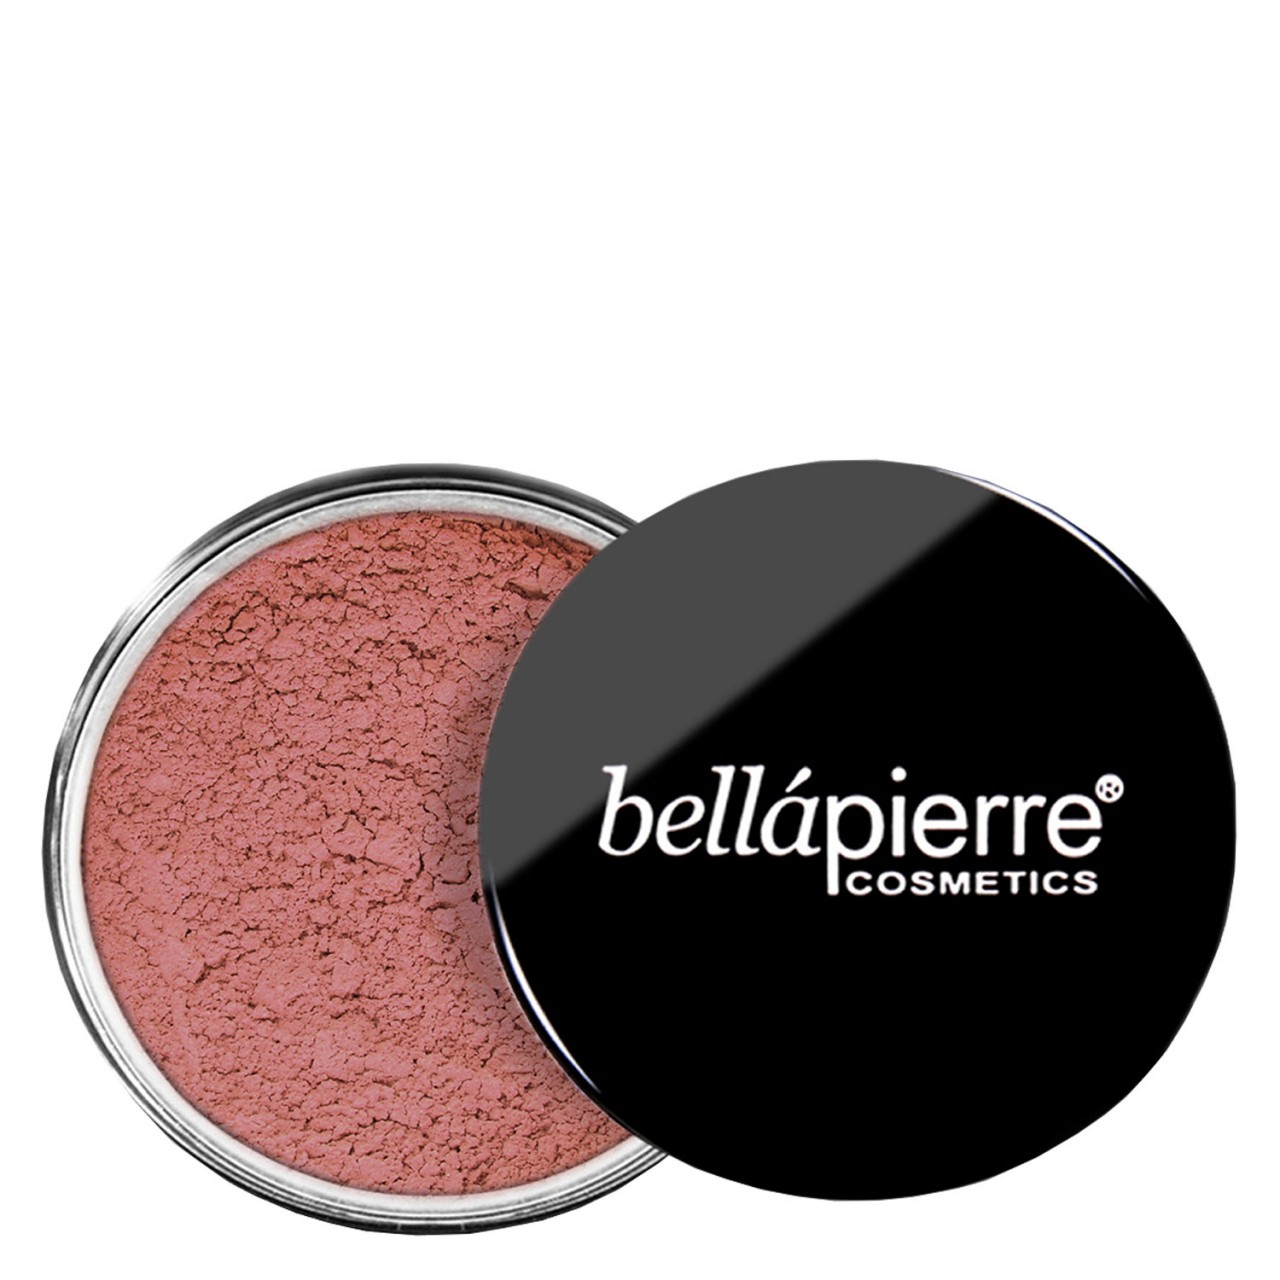 bellapierre Teint - Mineral Blush Suede von bellapierre